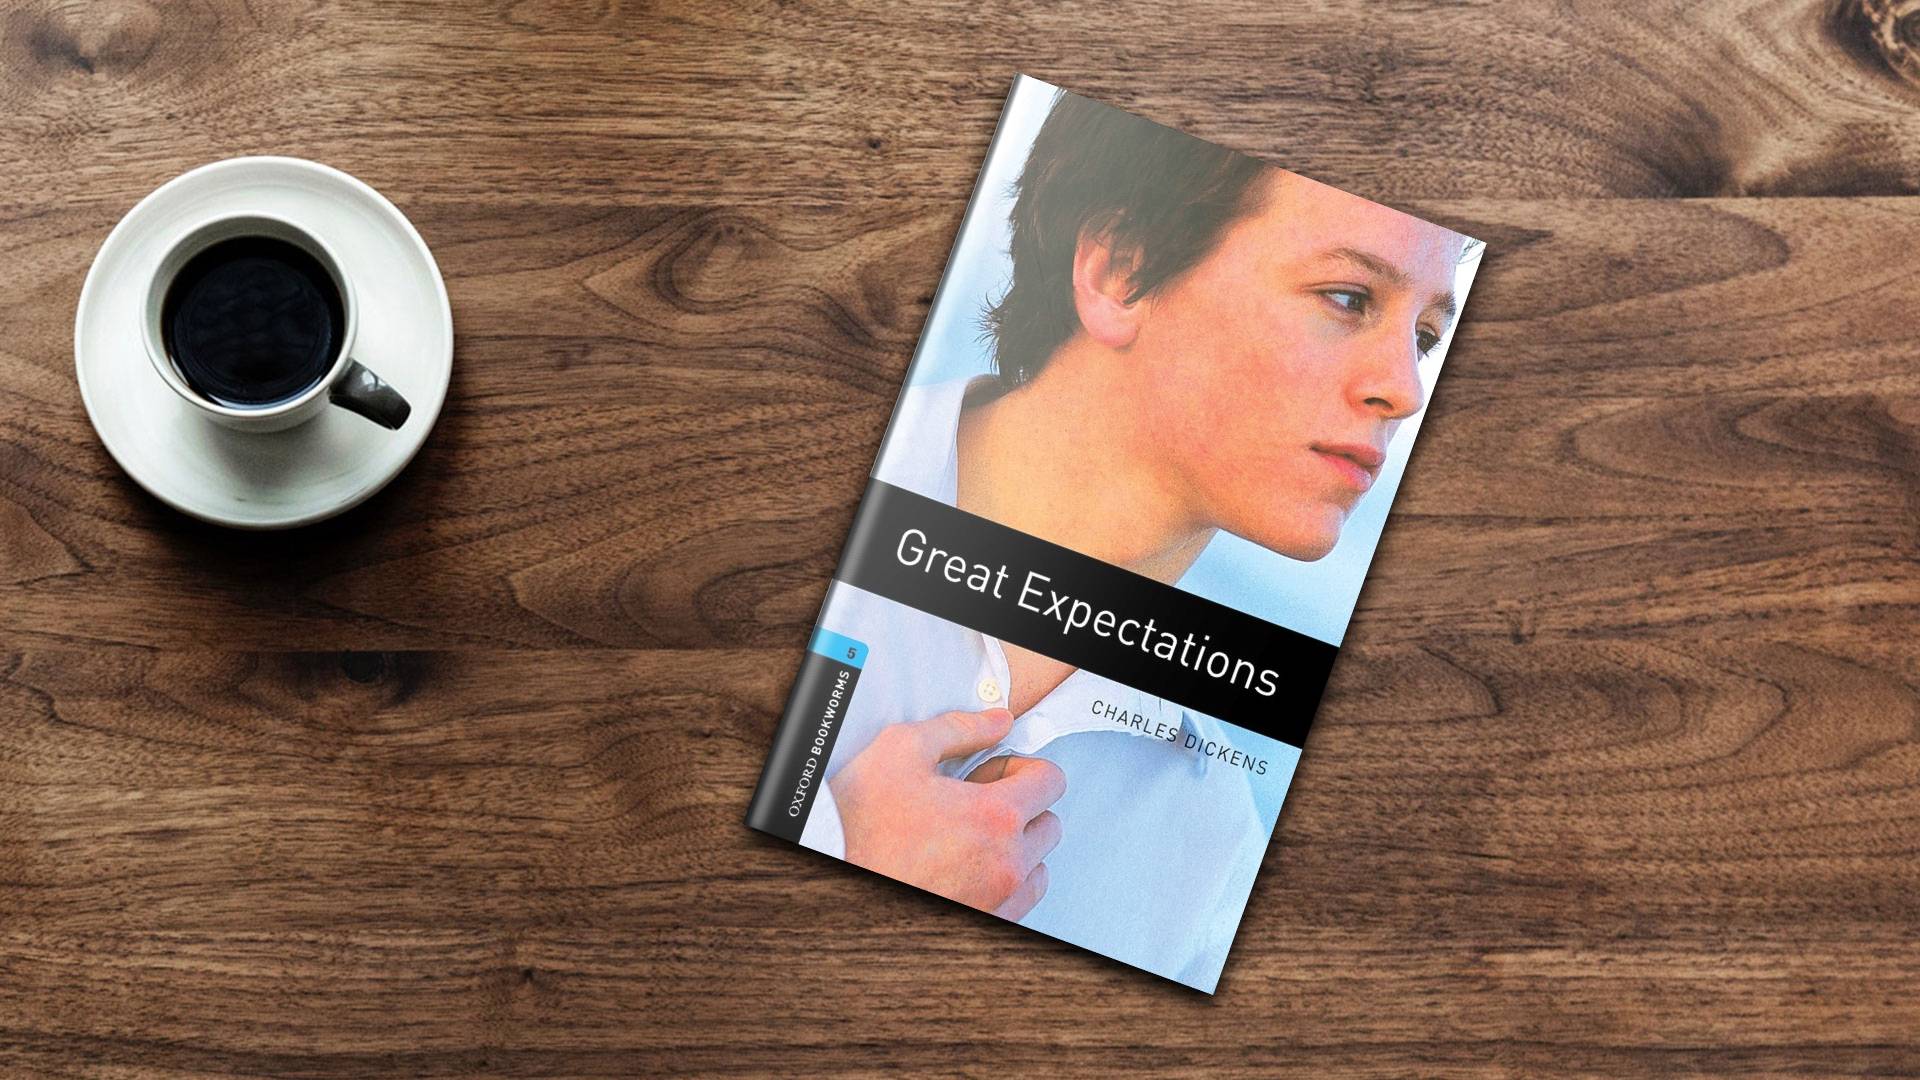 خرید کتاب داستان کوتاه انگلیسی | فروشگاه اینترنتی کتاب زبان | Oxford Bookworms 5 Great Expectations | آکسفورد بوک ورمز پنج آرزوهای بزرگ